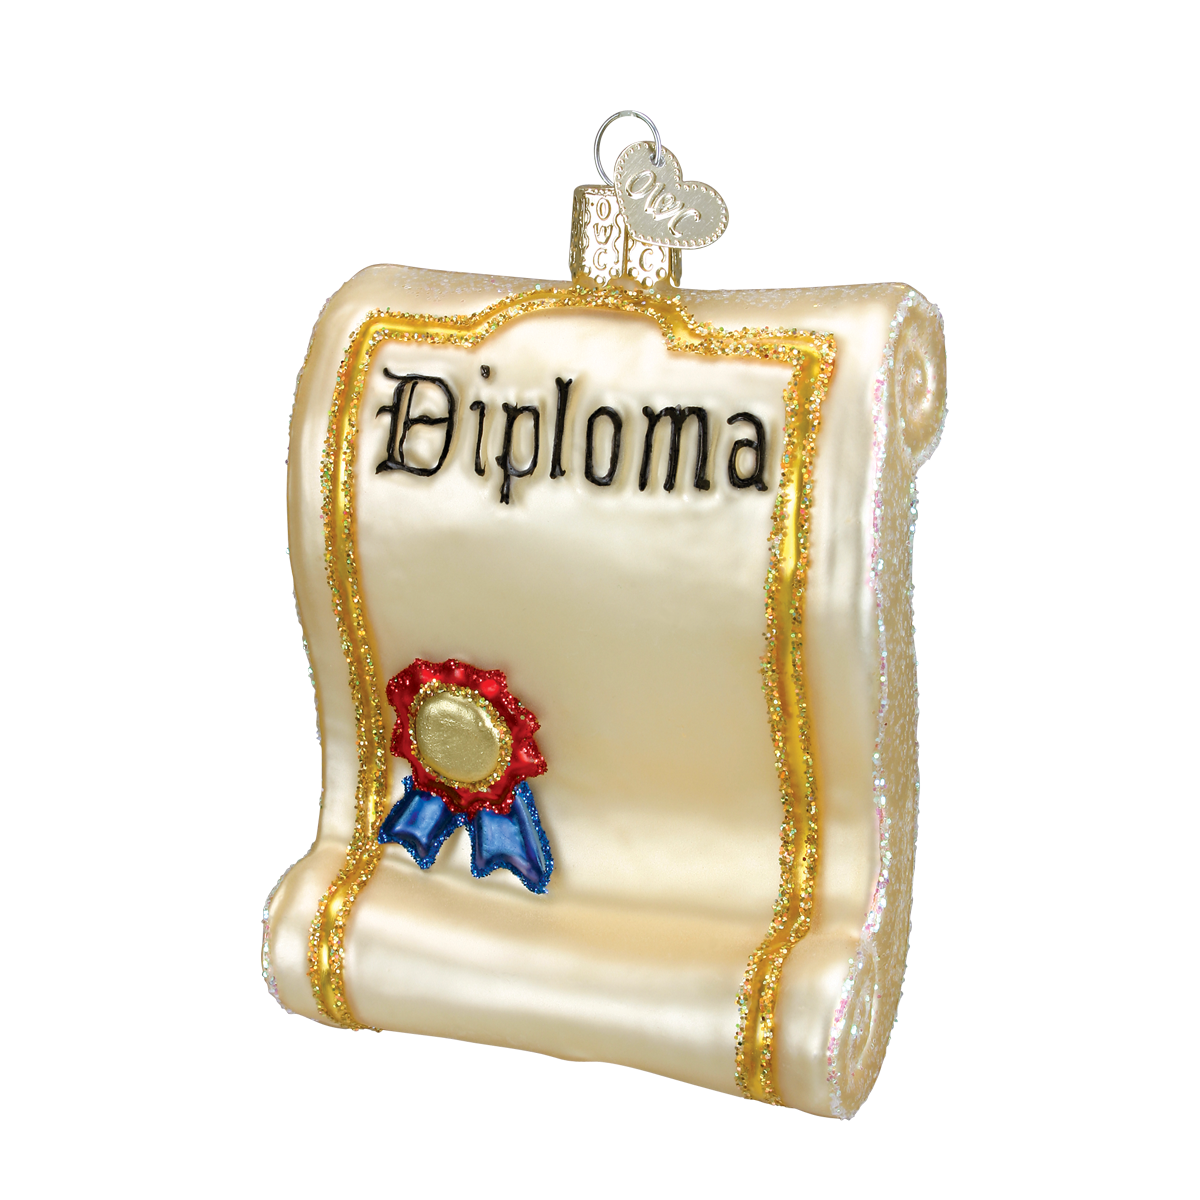 Old World Christmas - Diploma Ornament    